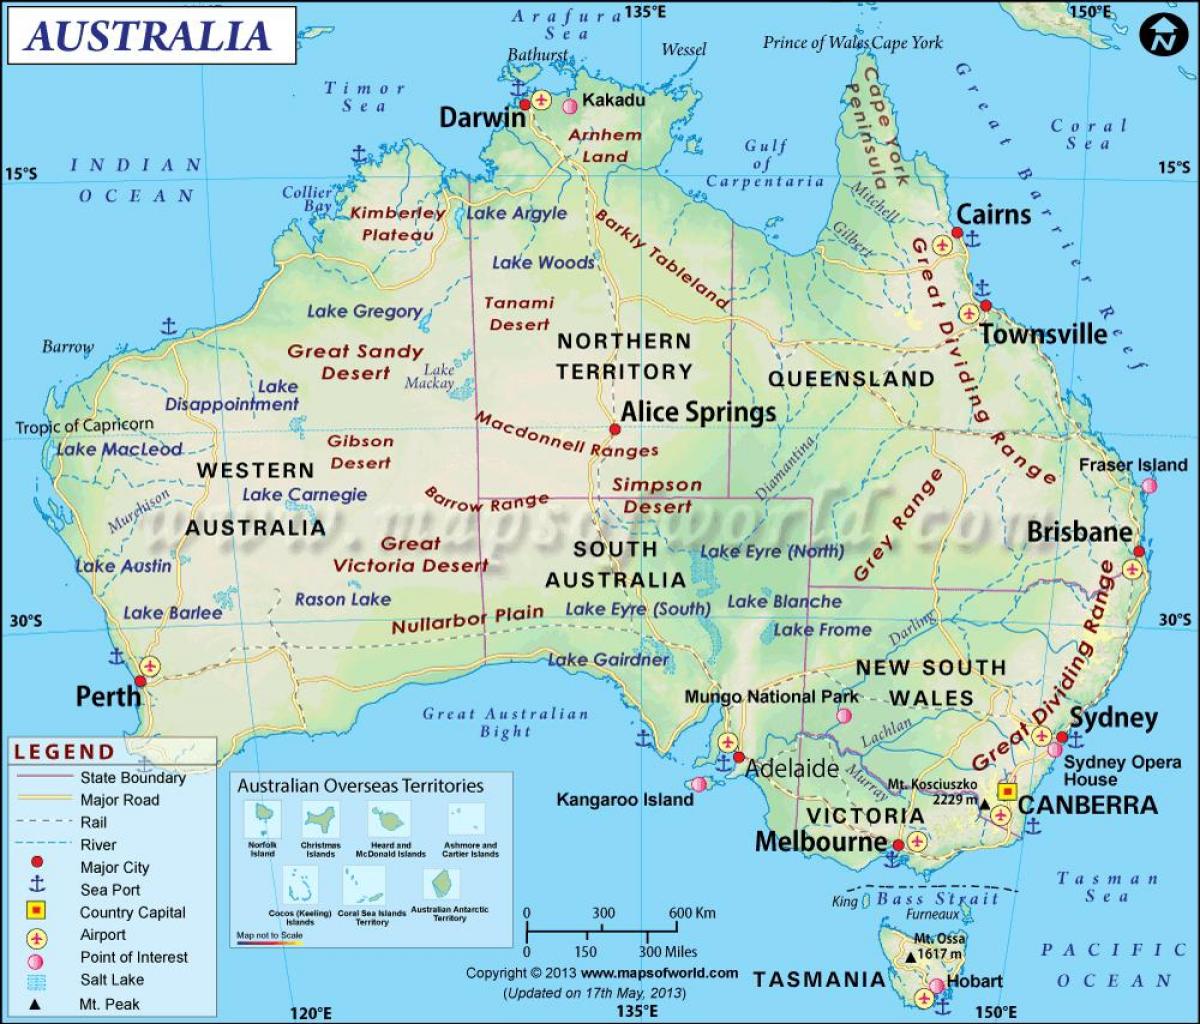 L'australie sur la carte